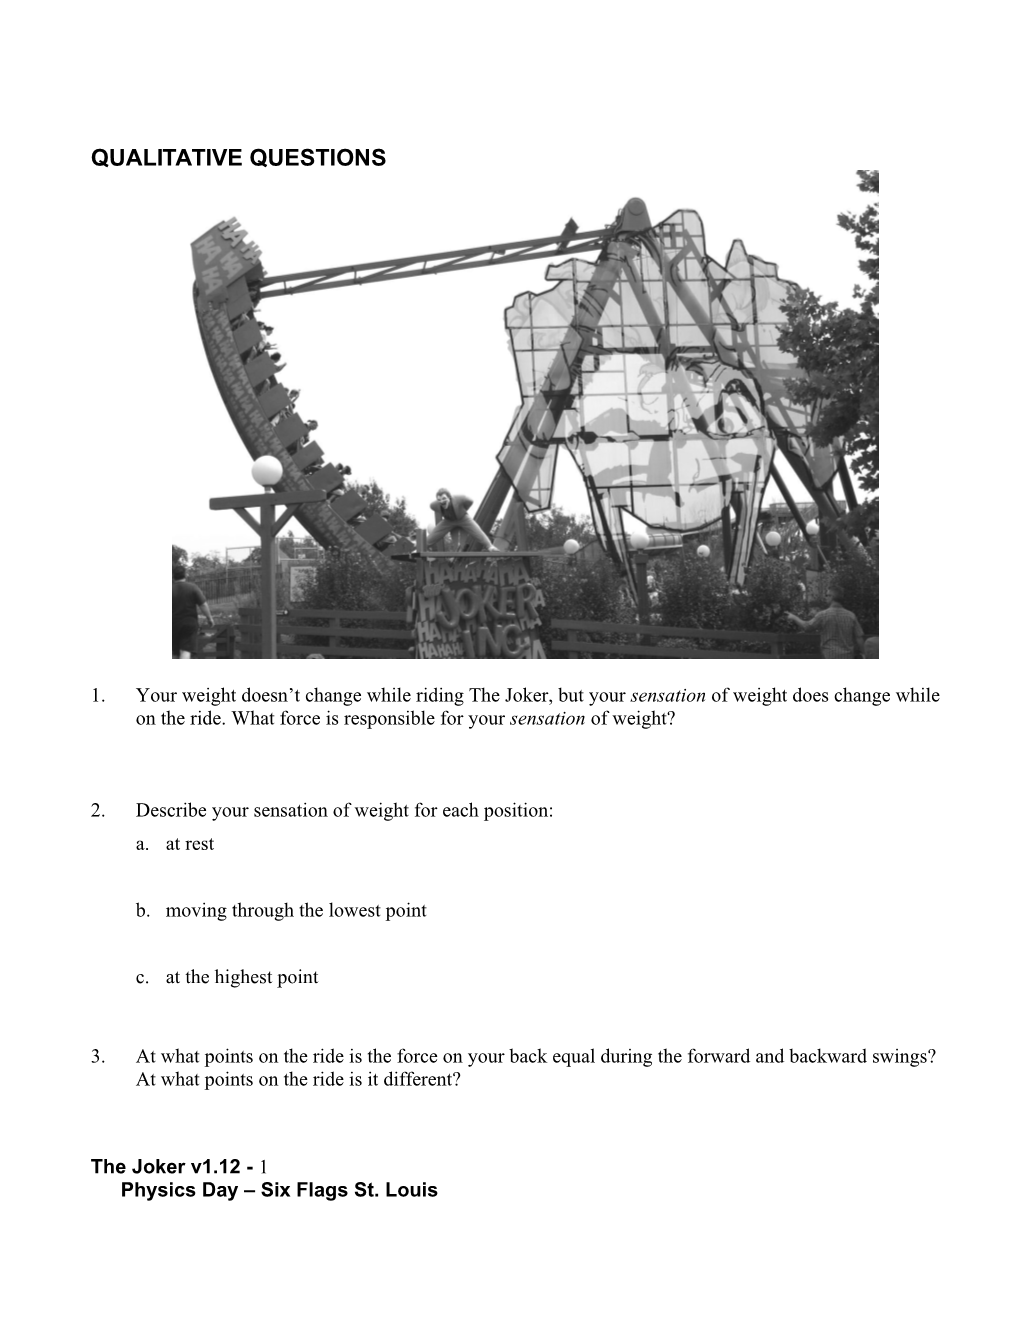 Qualitative Questions s1